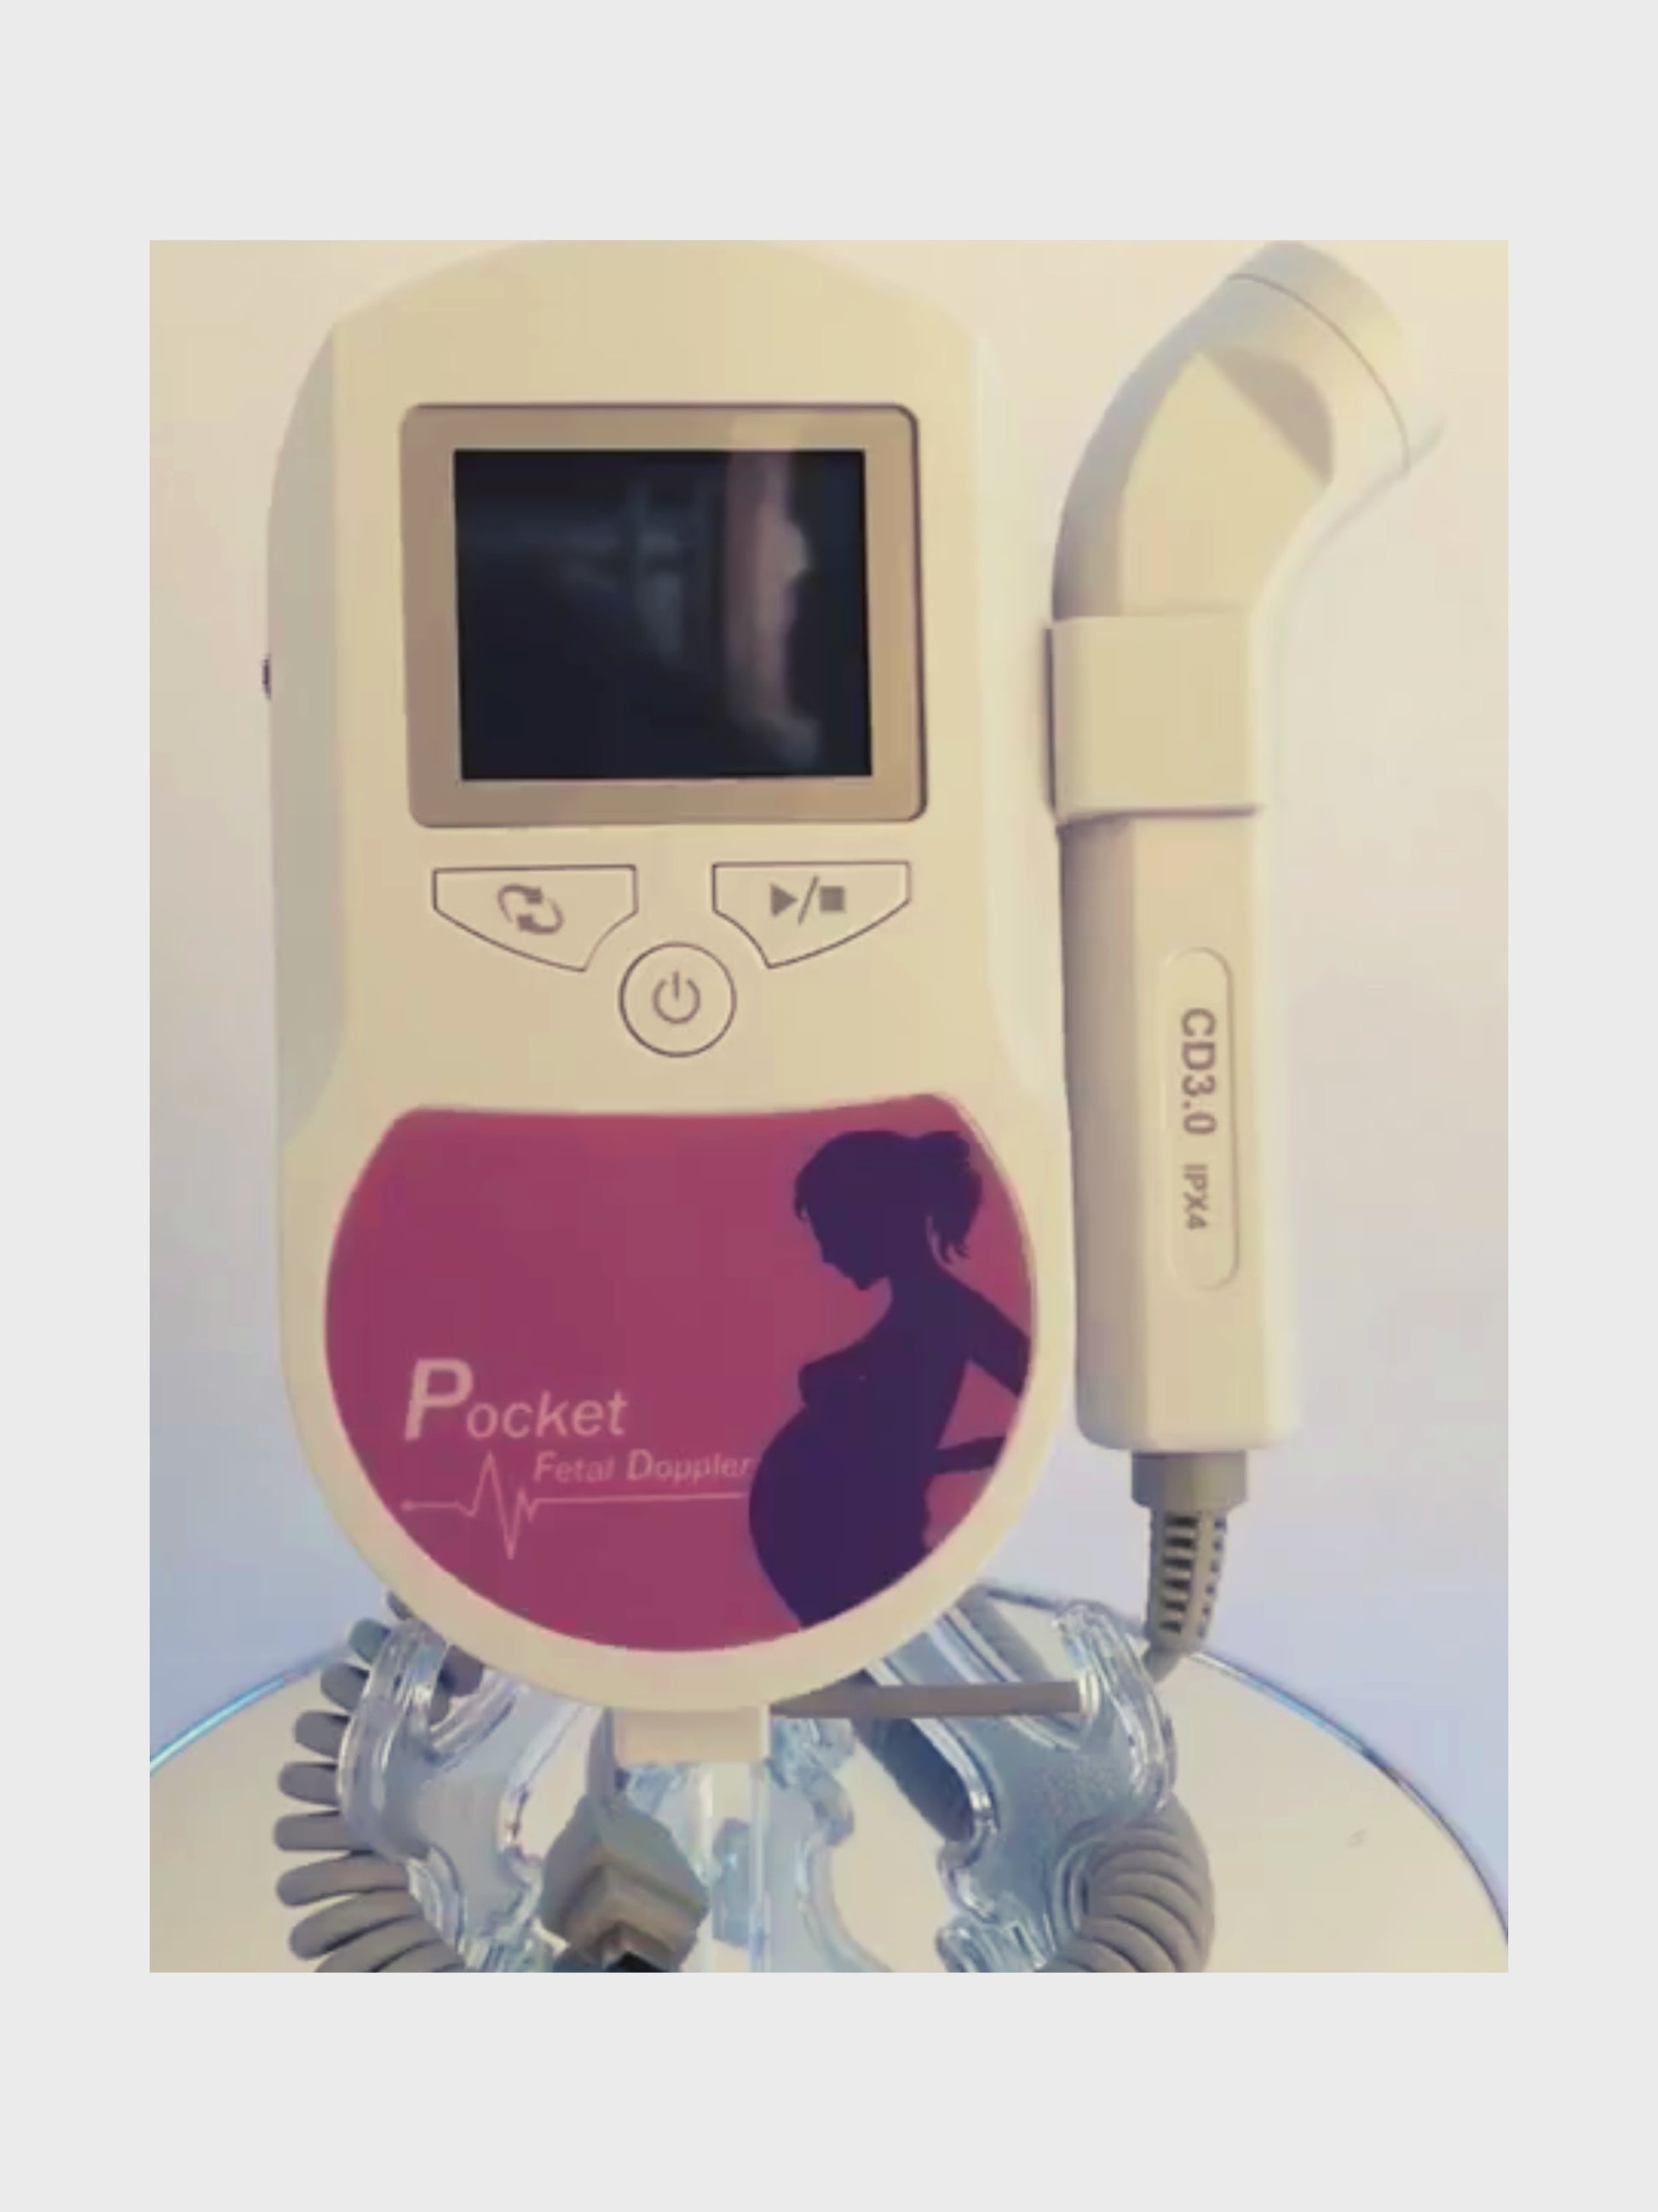 Moniteur de fréquence cardiaque pour bébé : Doppler foetal, Pulsations  cardiaques, Ultrasons, Ecouter le coeur du bebe, Doppler fœtal – BGadgets  France